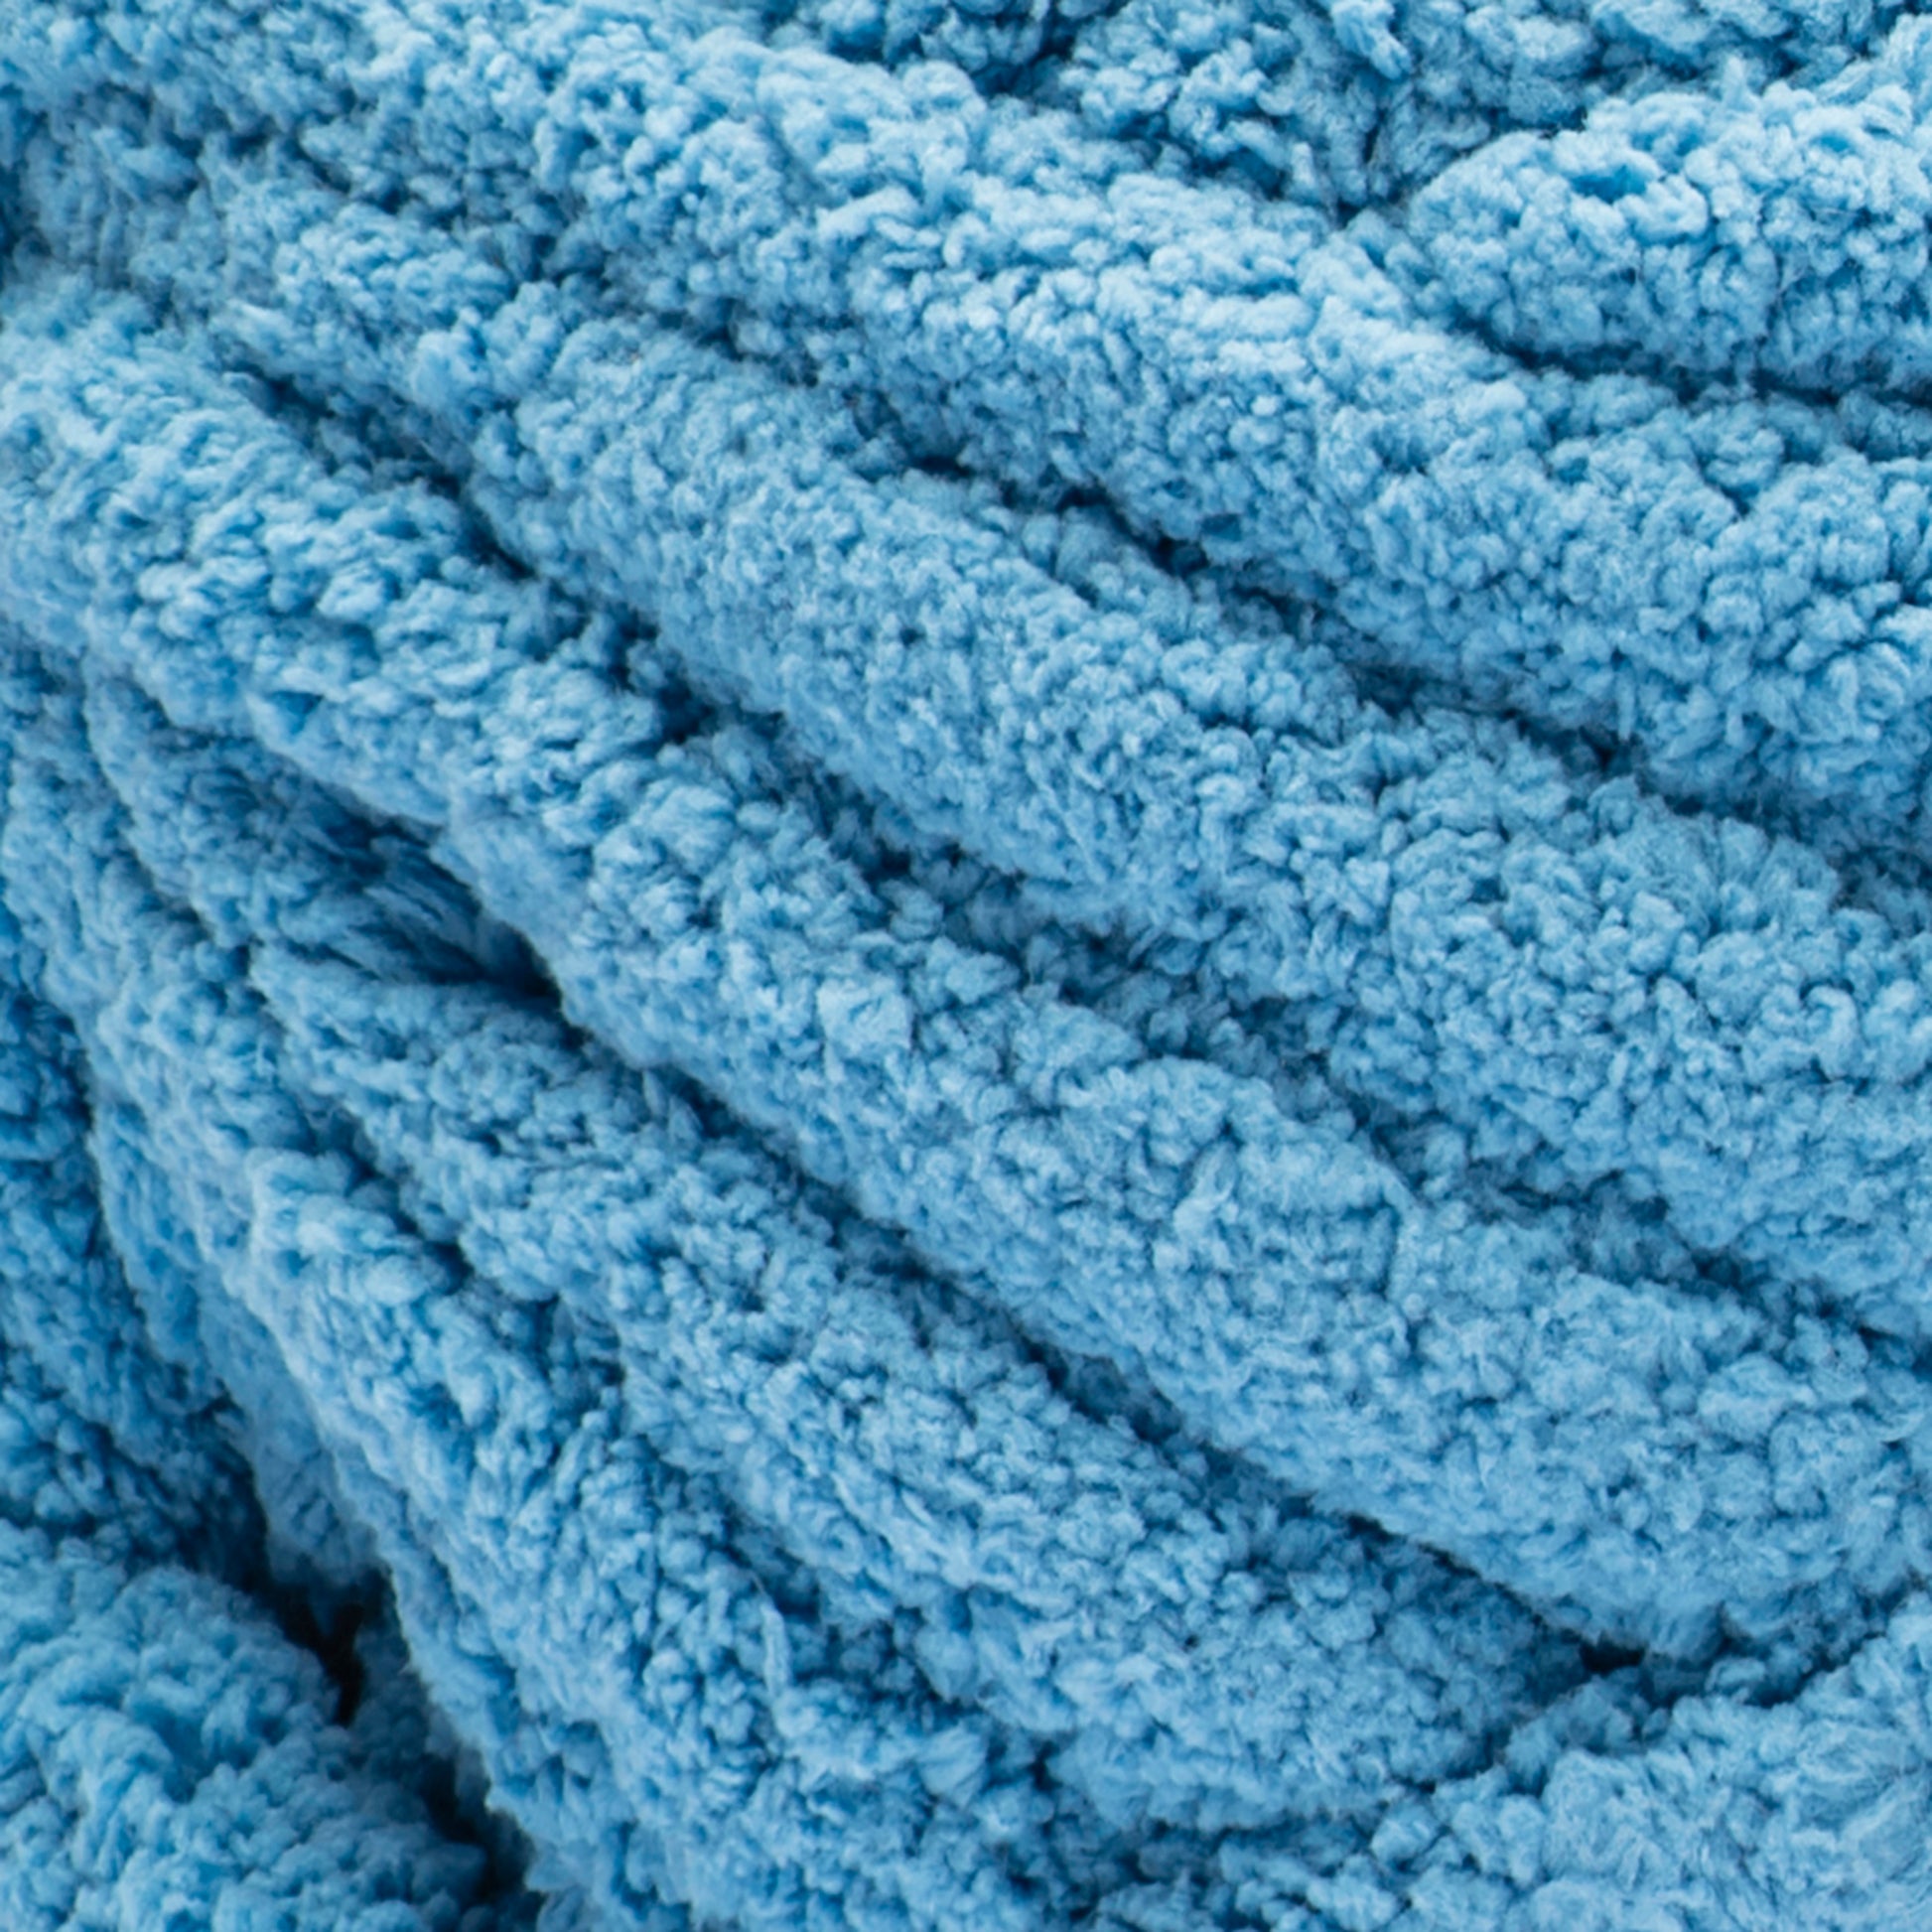 Bernat Blanket Extra Thick Yarn (600g/21.2oz) Sky